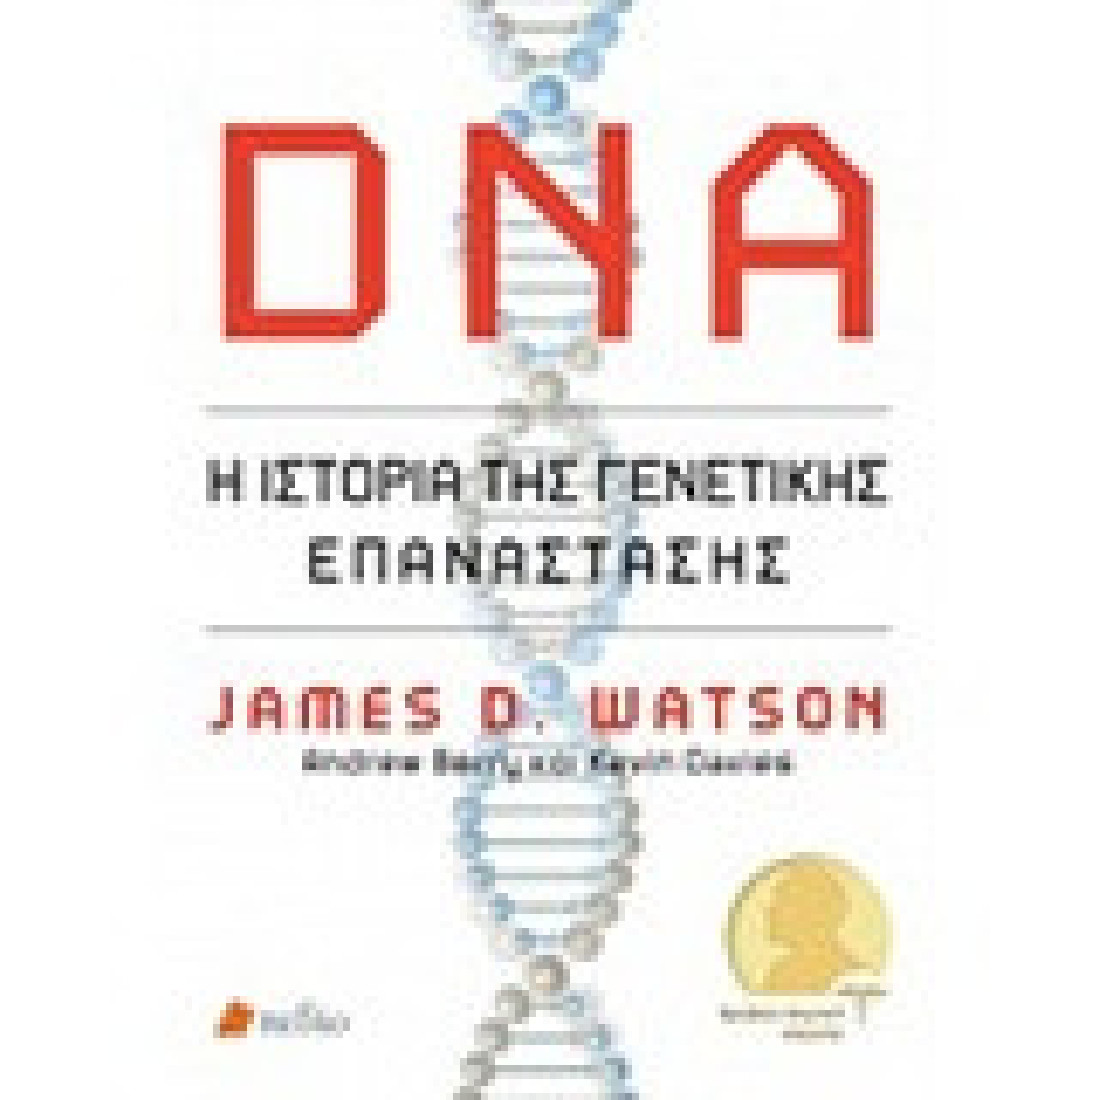 DNA: Η ιστορία της γενετικής επανάστασης